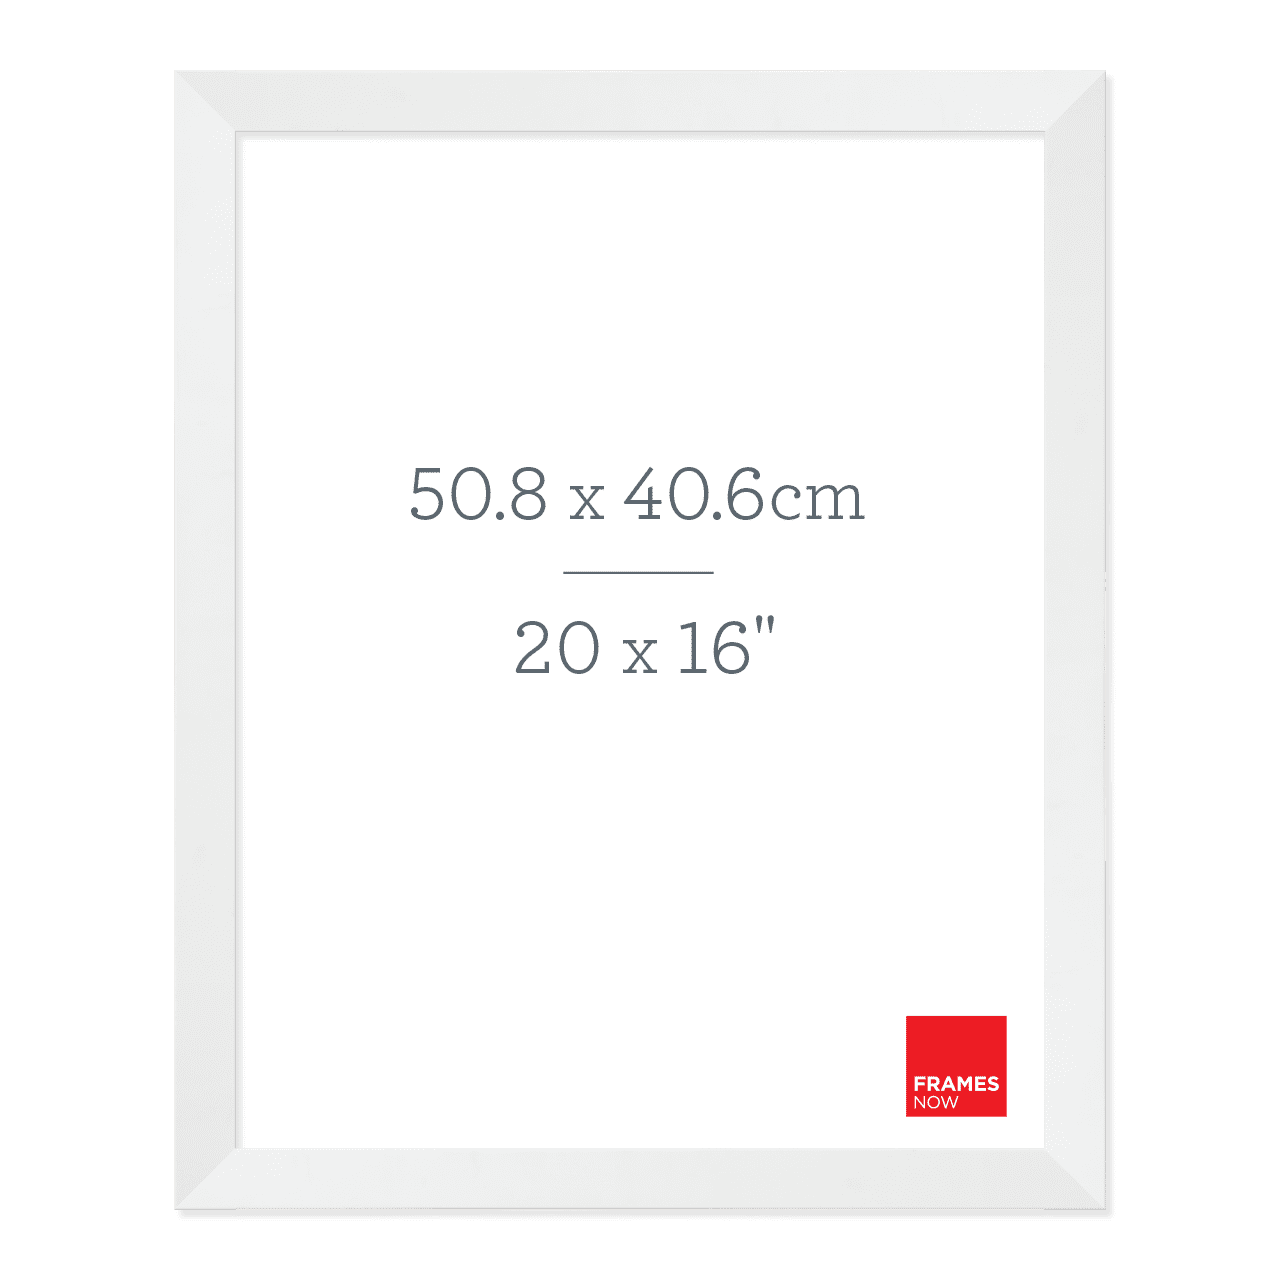 Premium Matte White Picture Frame for 50.8 x 40.6cm Artwork